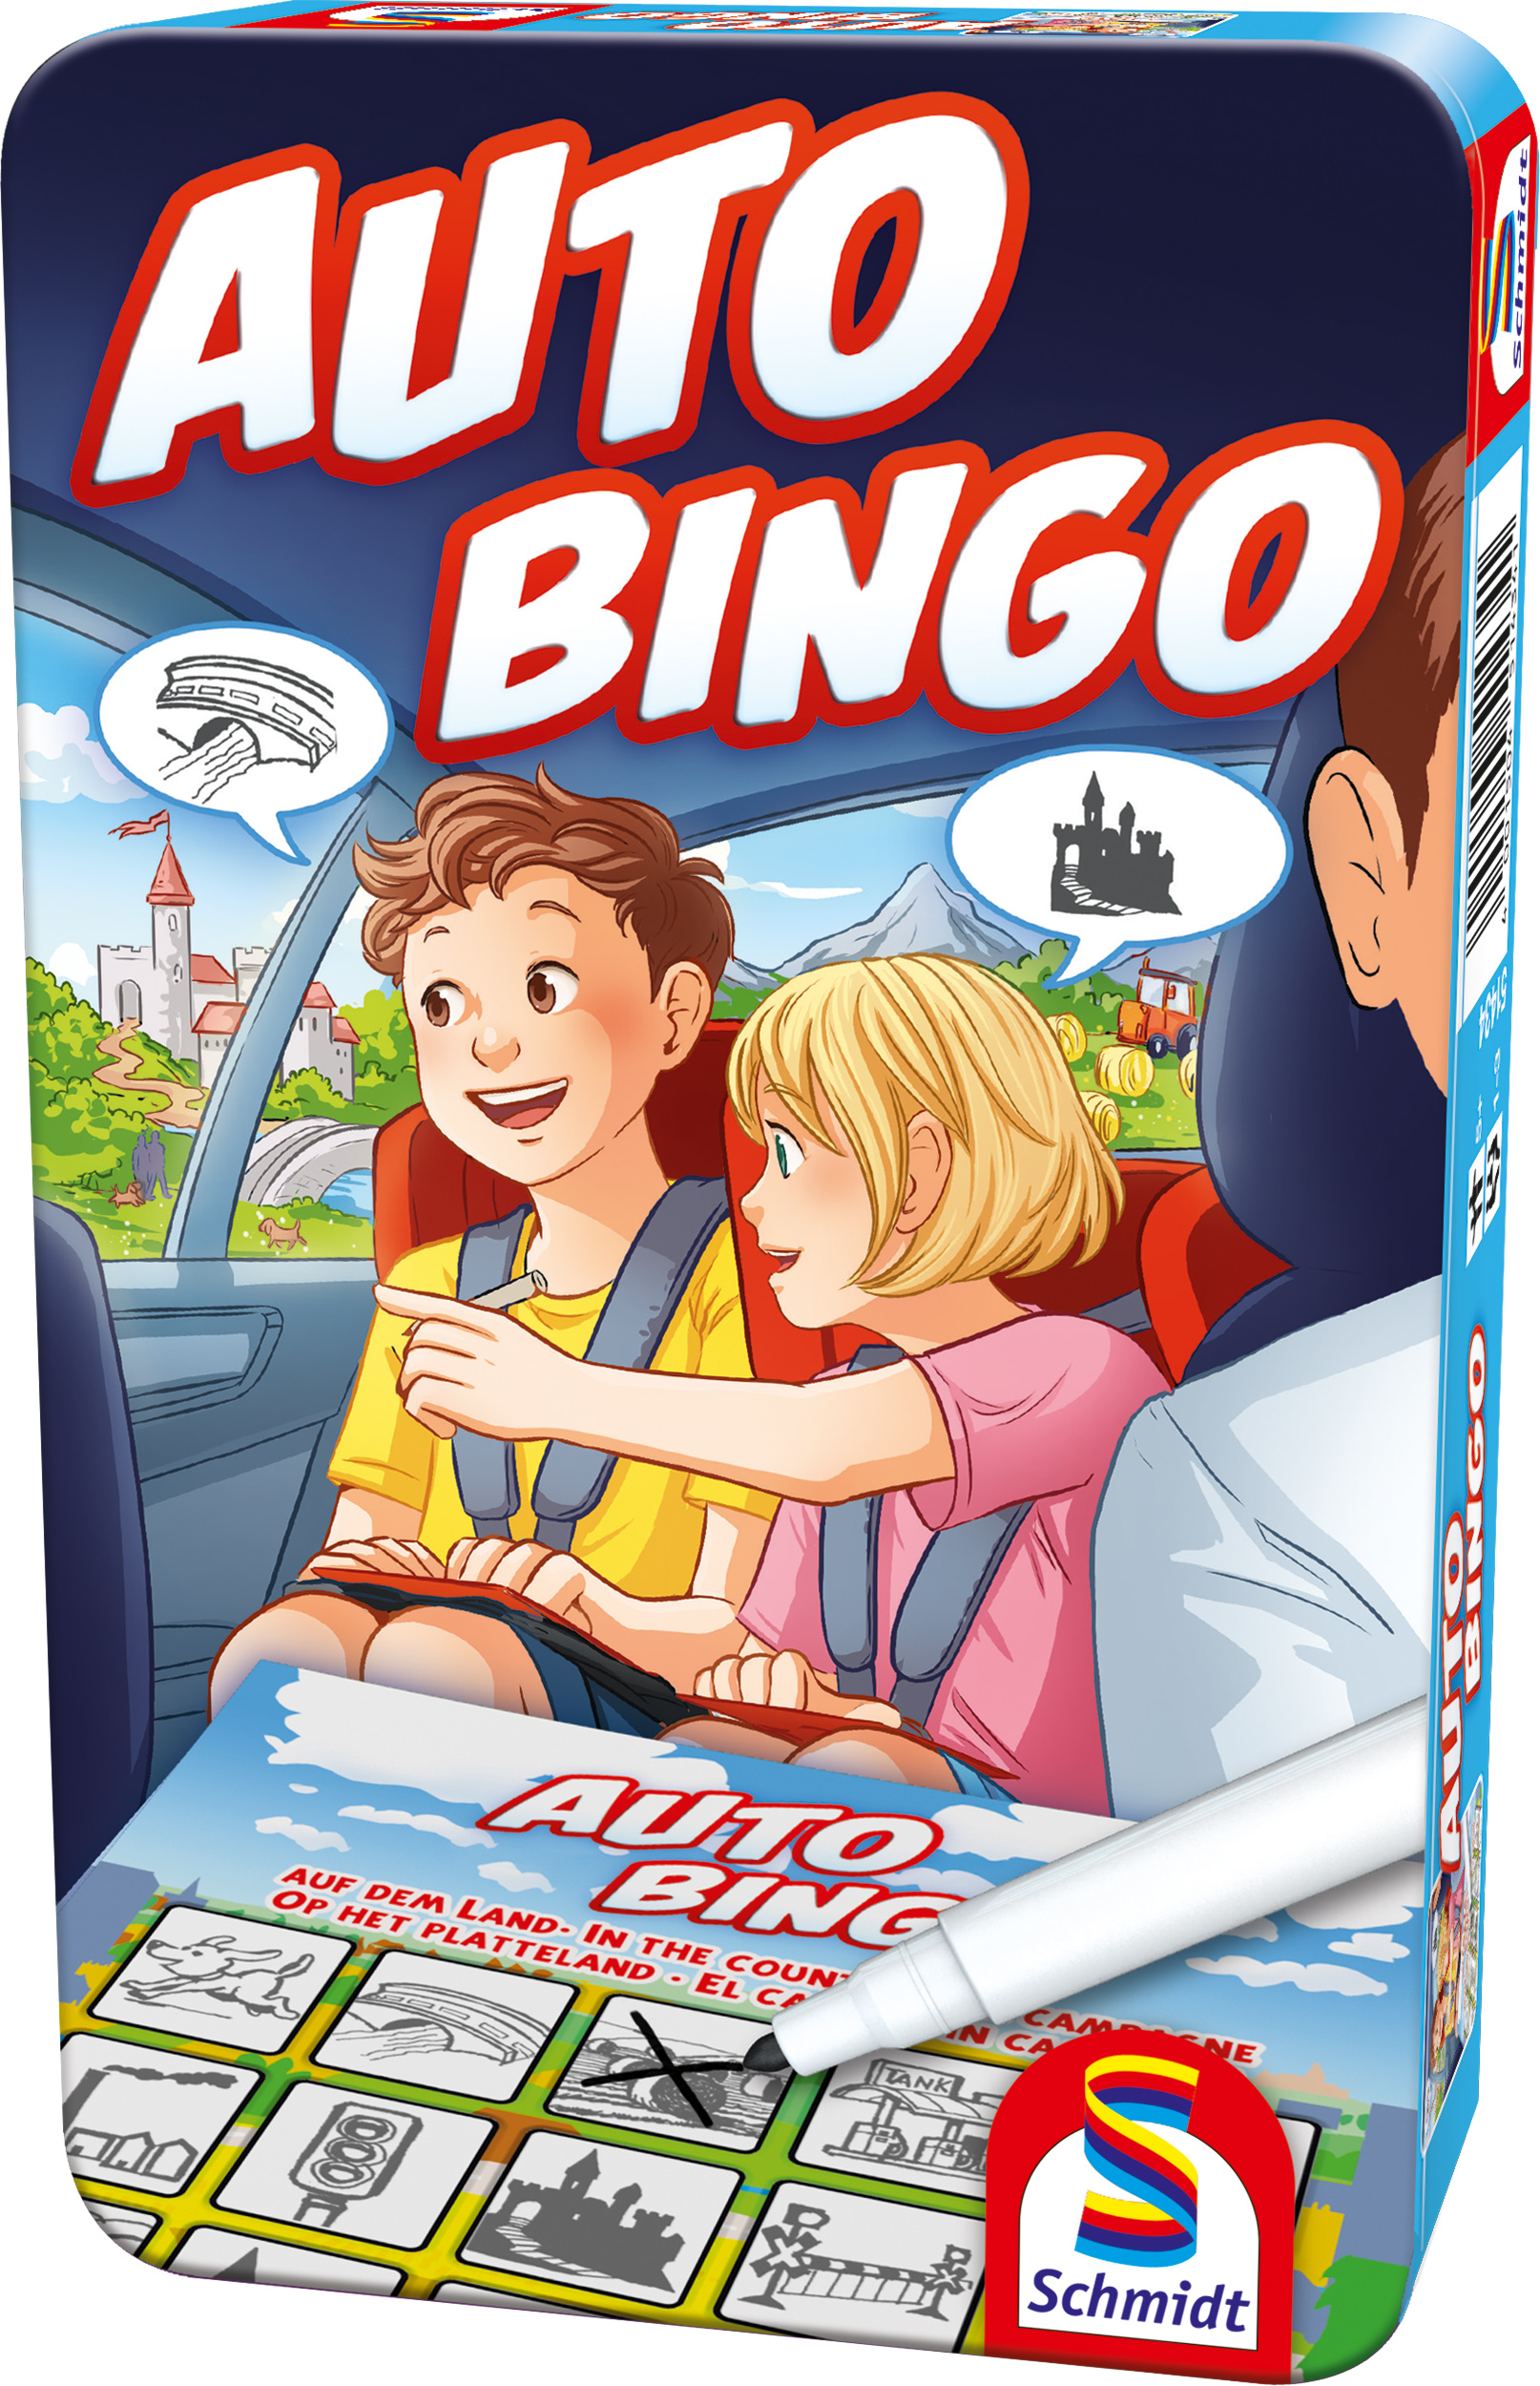 SCHMIDT SPIELE Bring-Mich-Mit-Spiel in Metalldose - nein M-Auto-Bingo  Gesellschaftsspiel